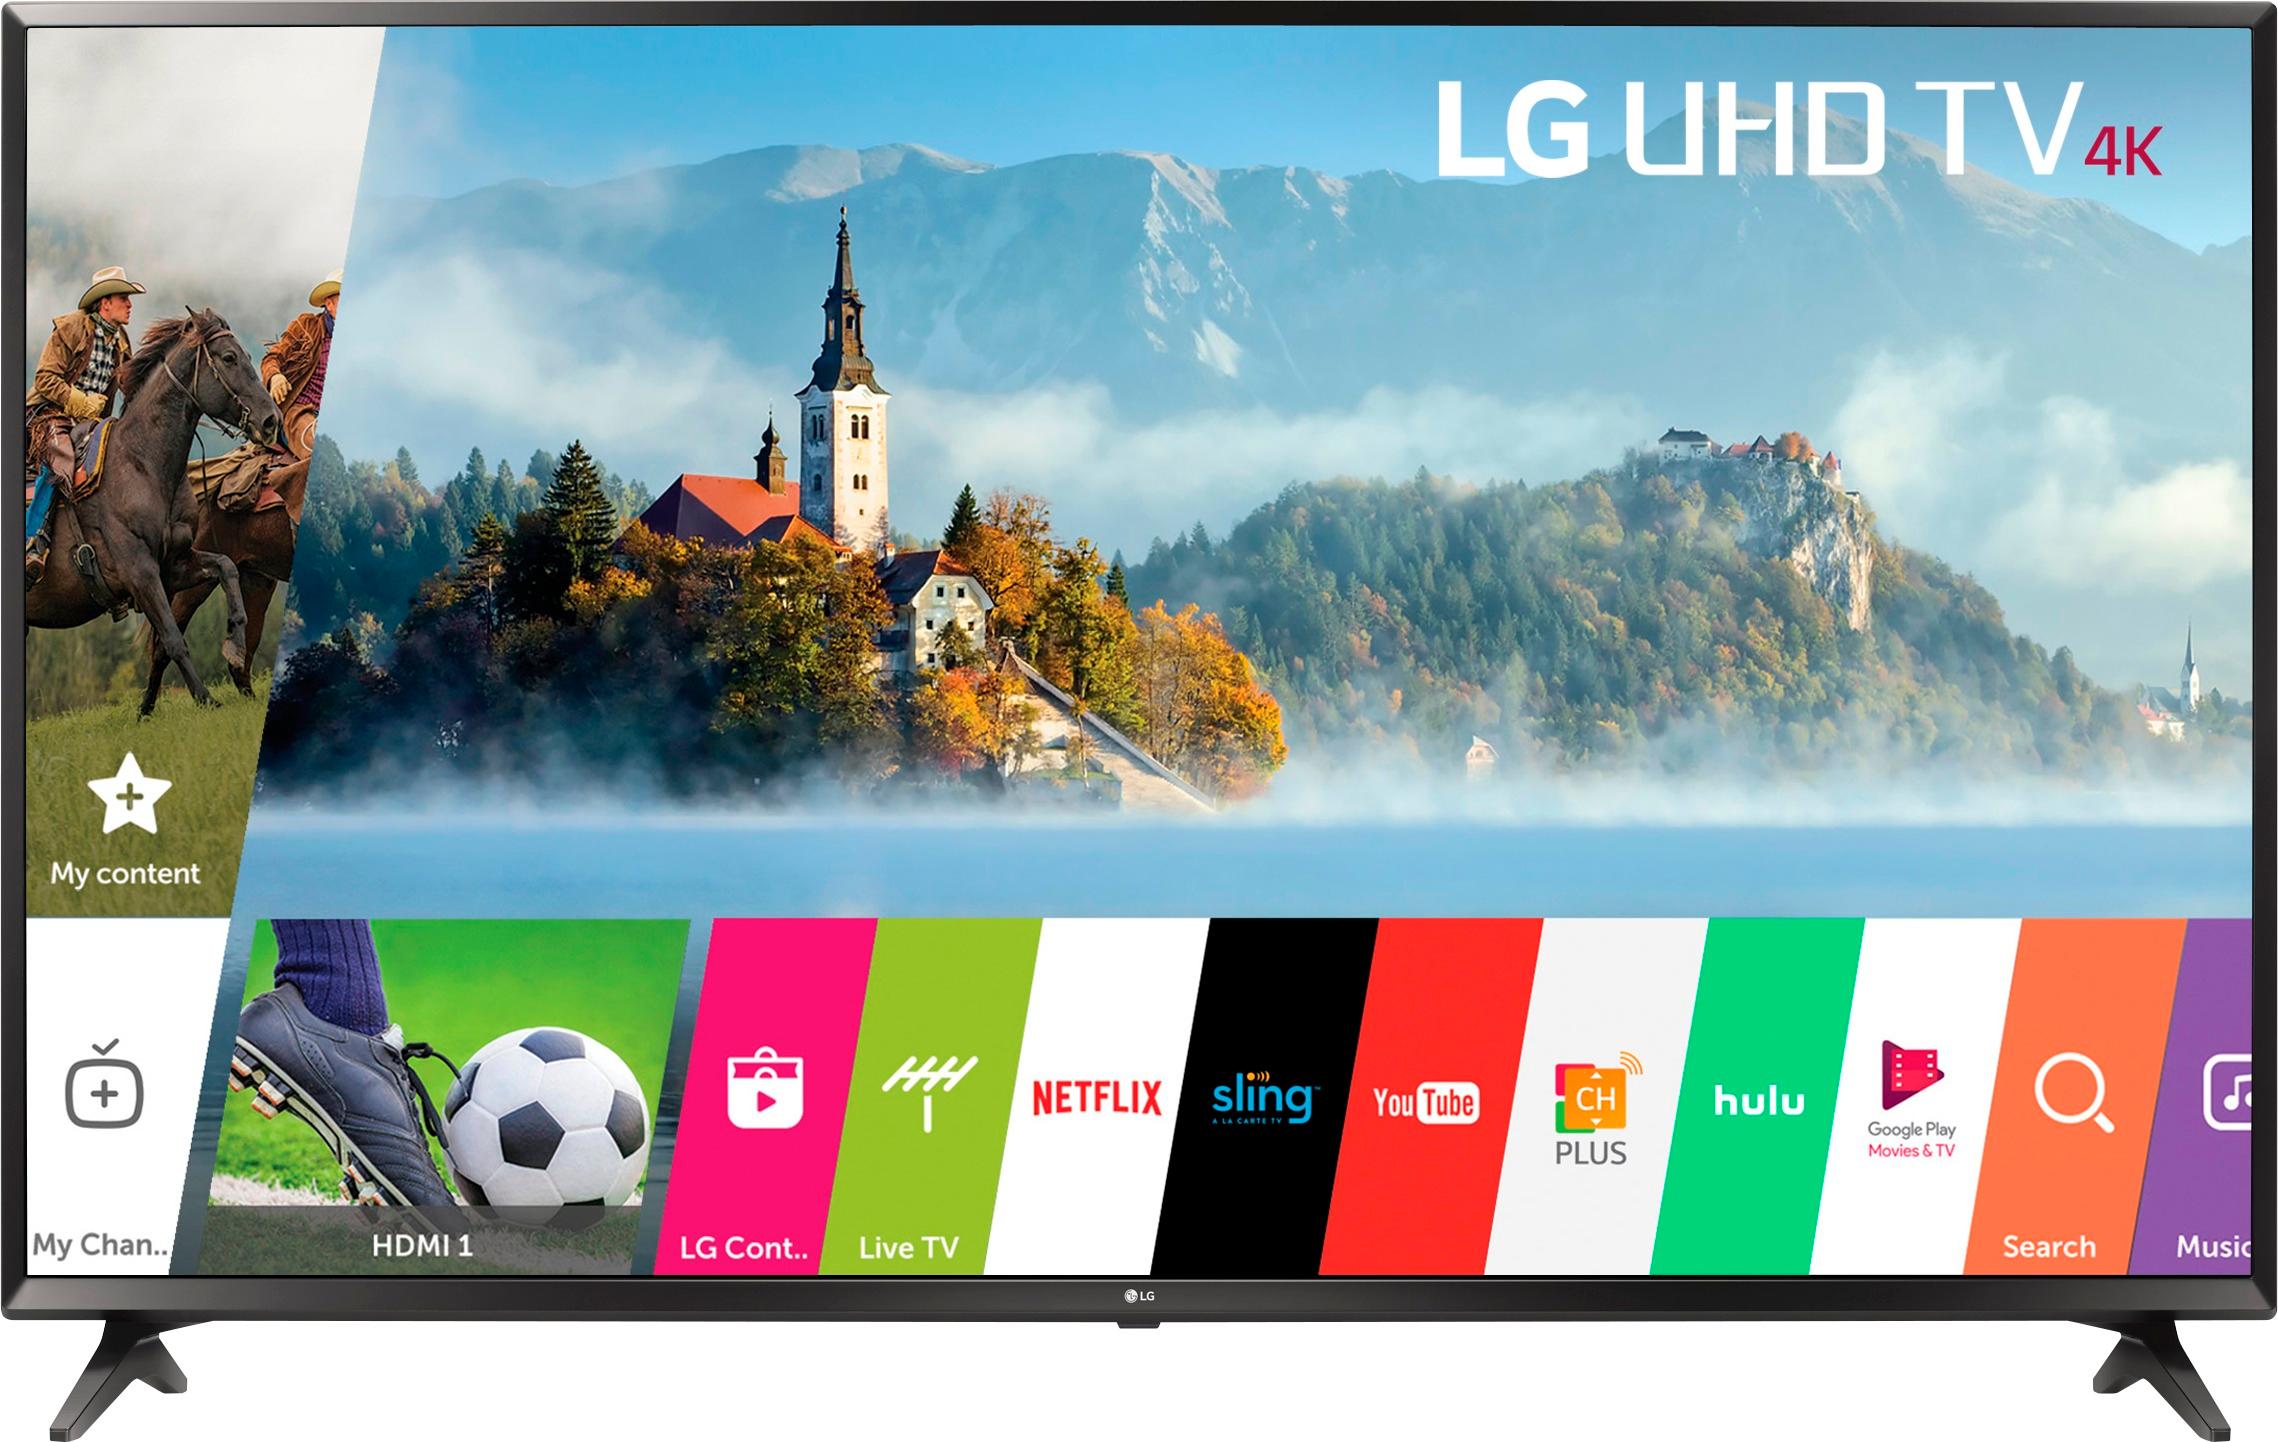 LG TV 60 LED 4K Smart